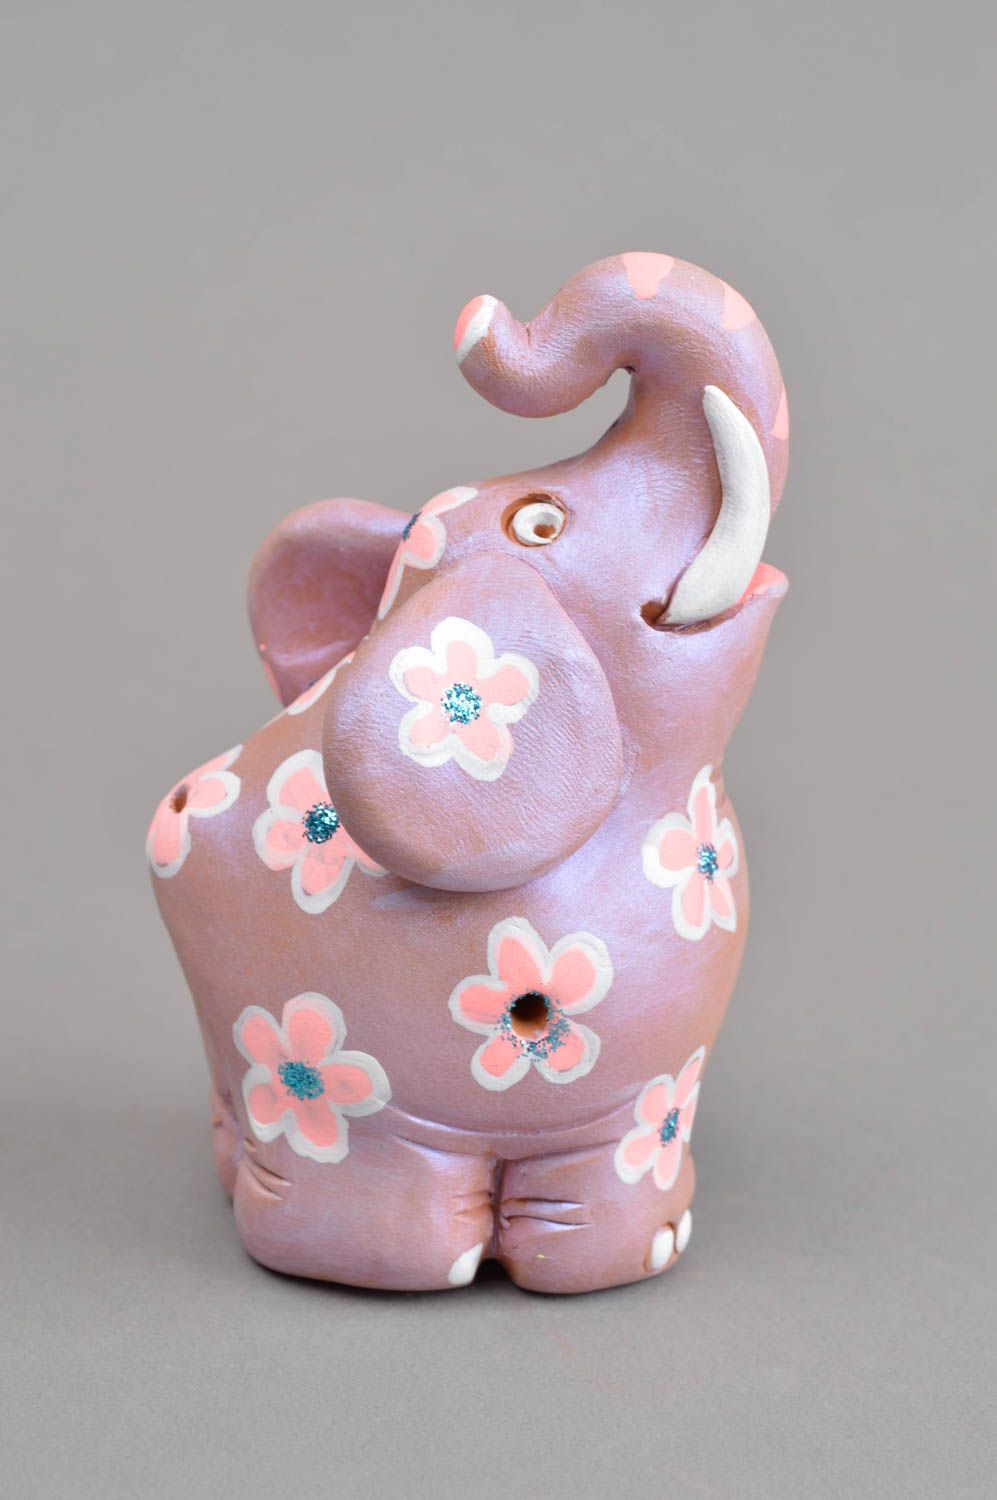 Silbato artesanal con forma de elefante instrumento de viento regalo para niños foto 3